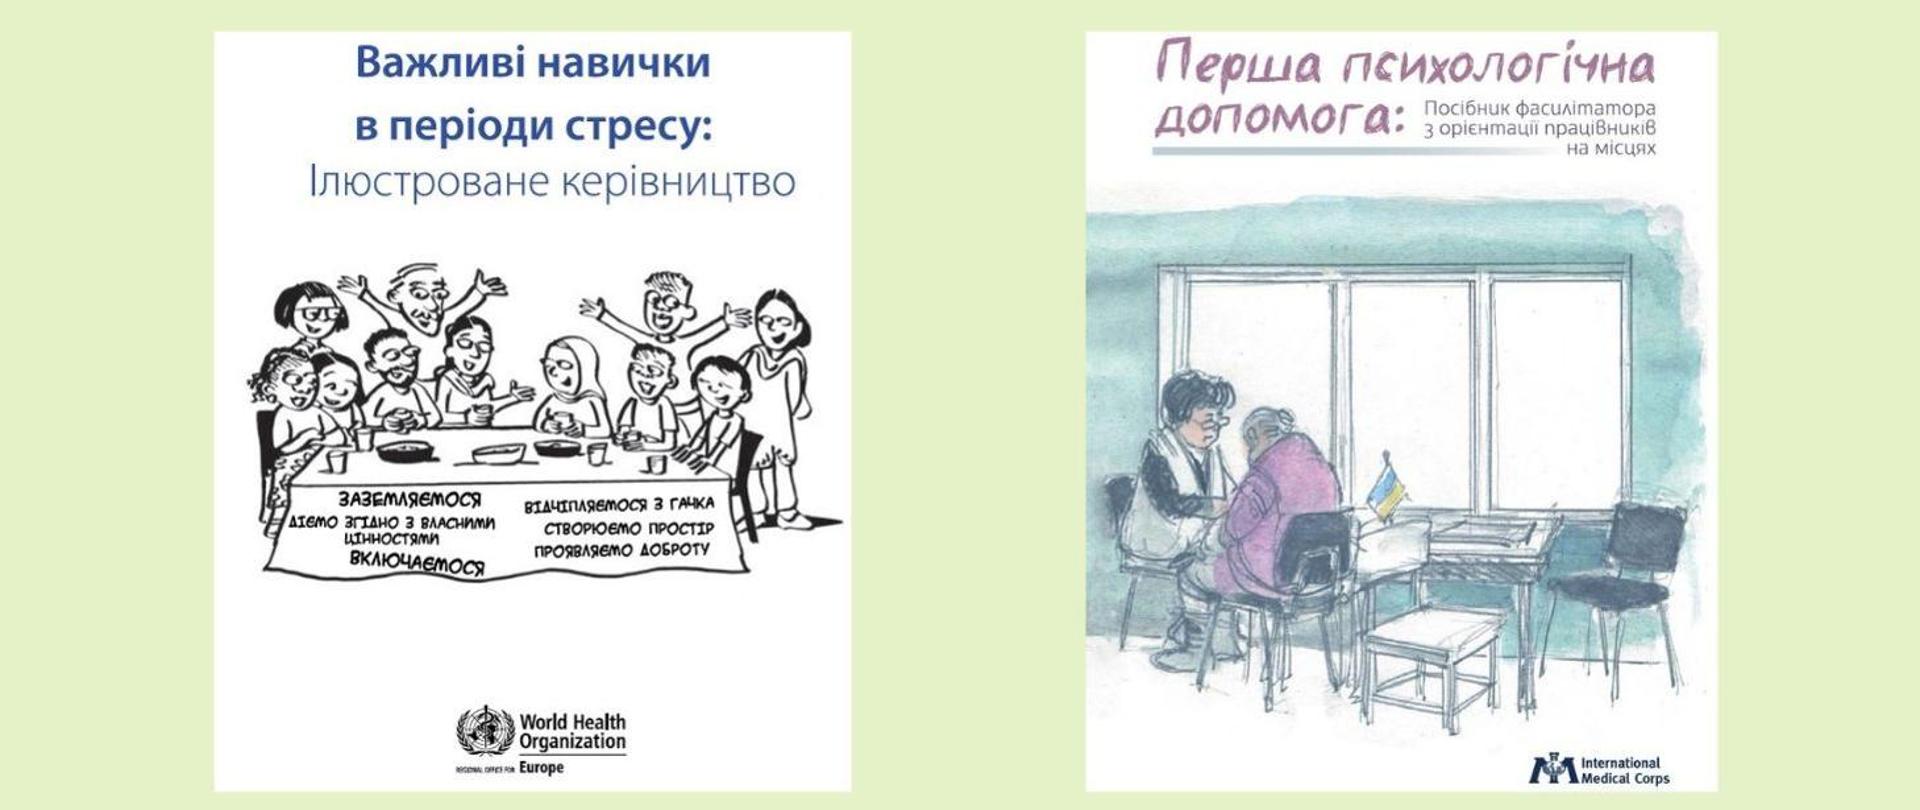 Materiały dotyczące wstępnej pomocy psychologicznej uchodźcom z Ukrainy